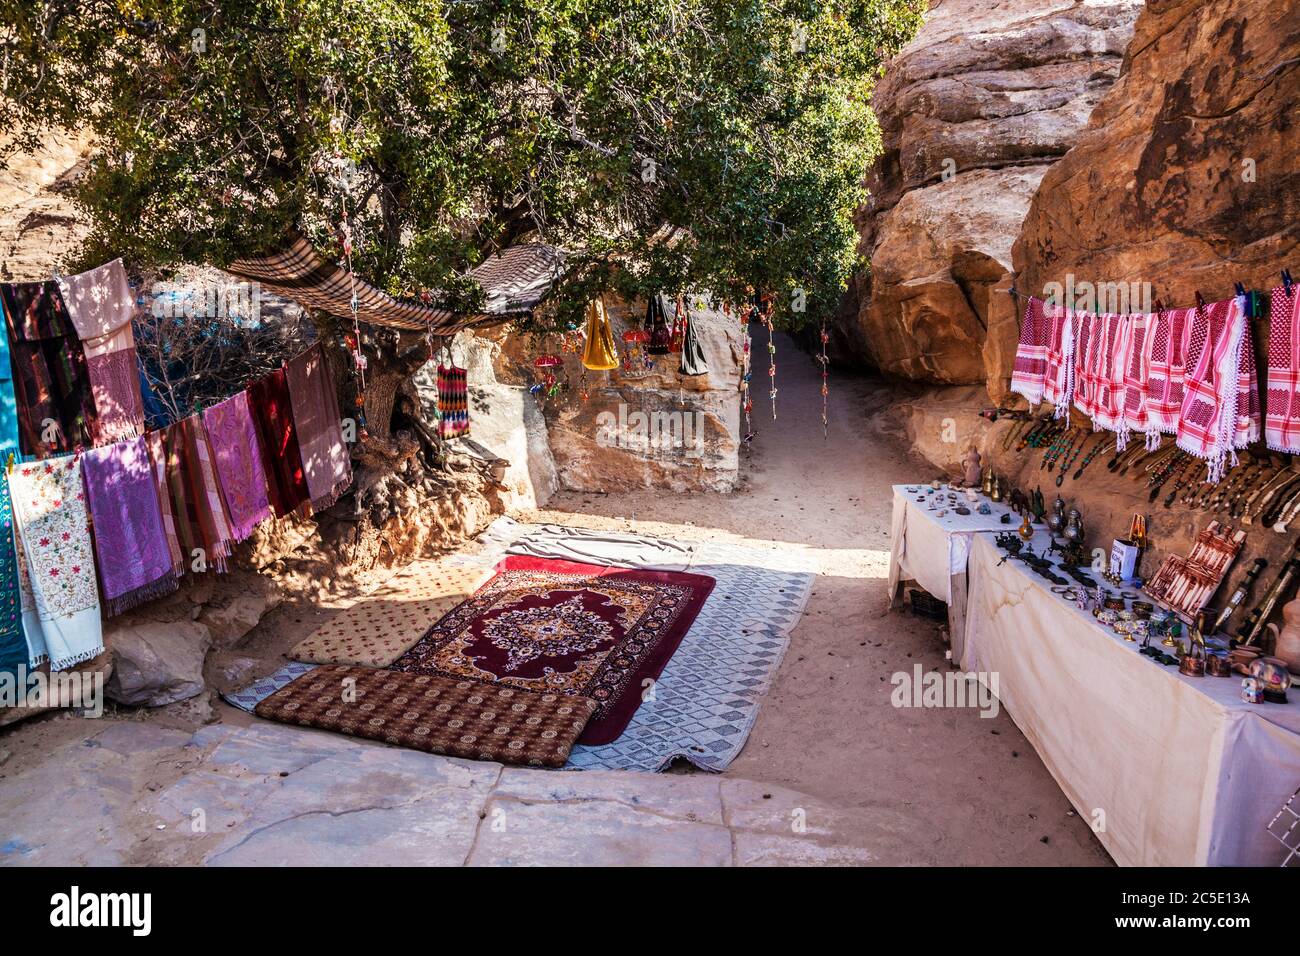 Souvenirs touristiques exposés à Siq Al-Barid ou à Little Petra en Jordanie. Banque D'Images